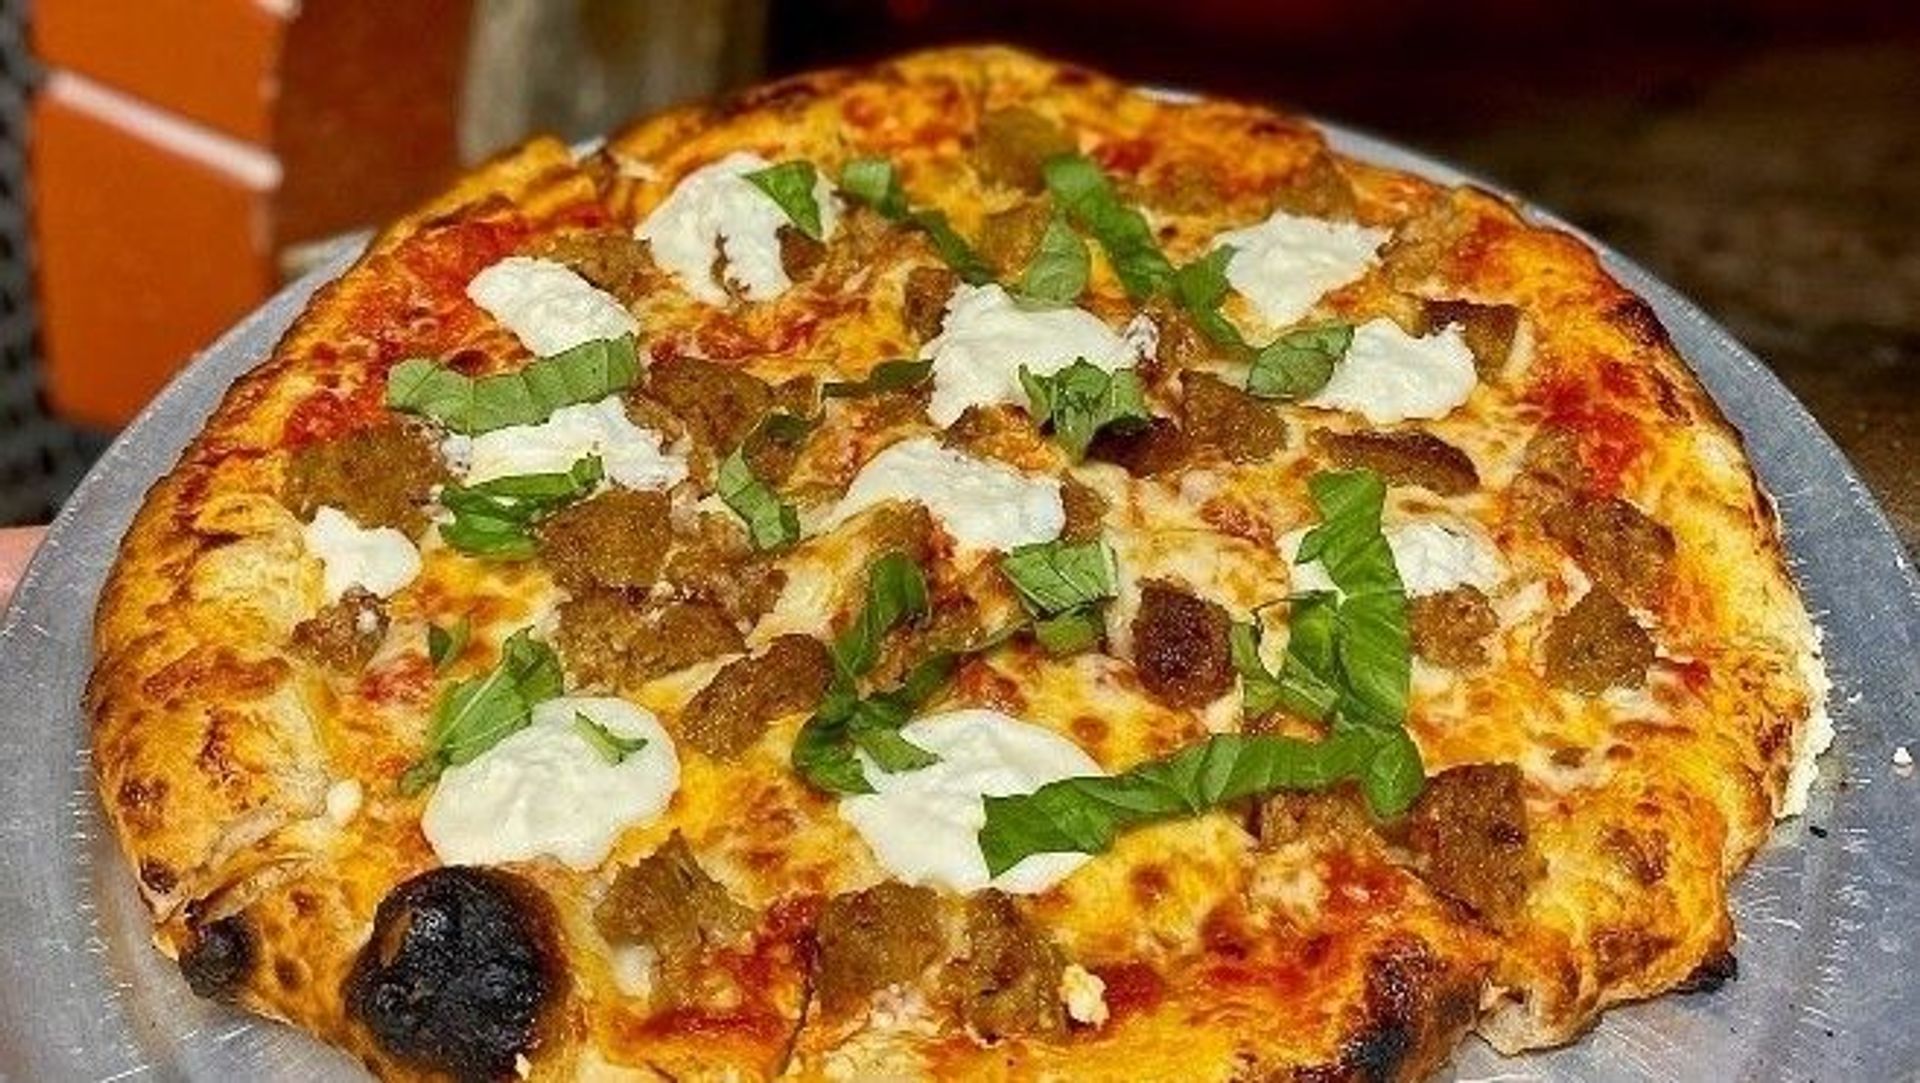 The Lasagna Pizza